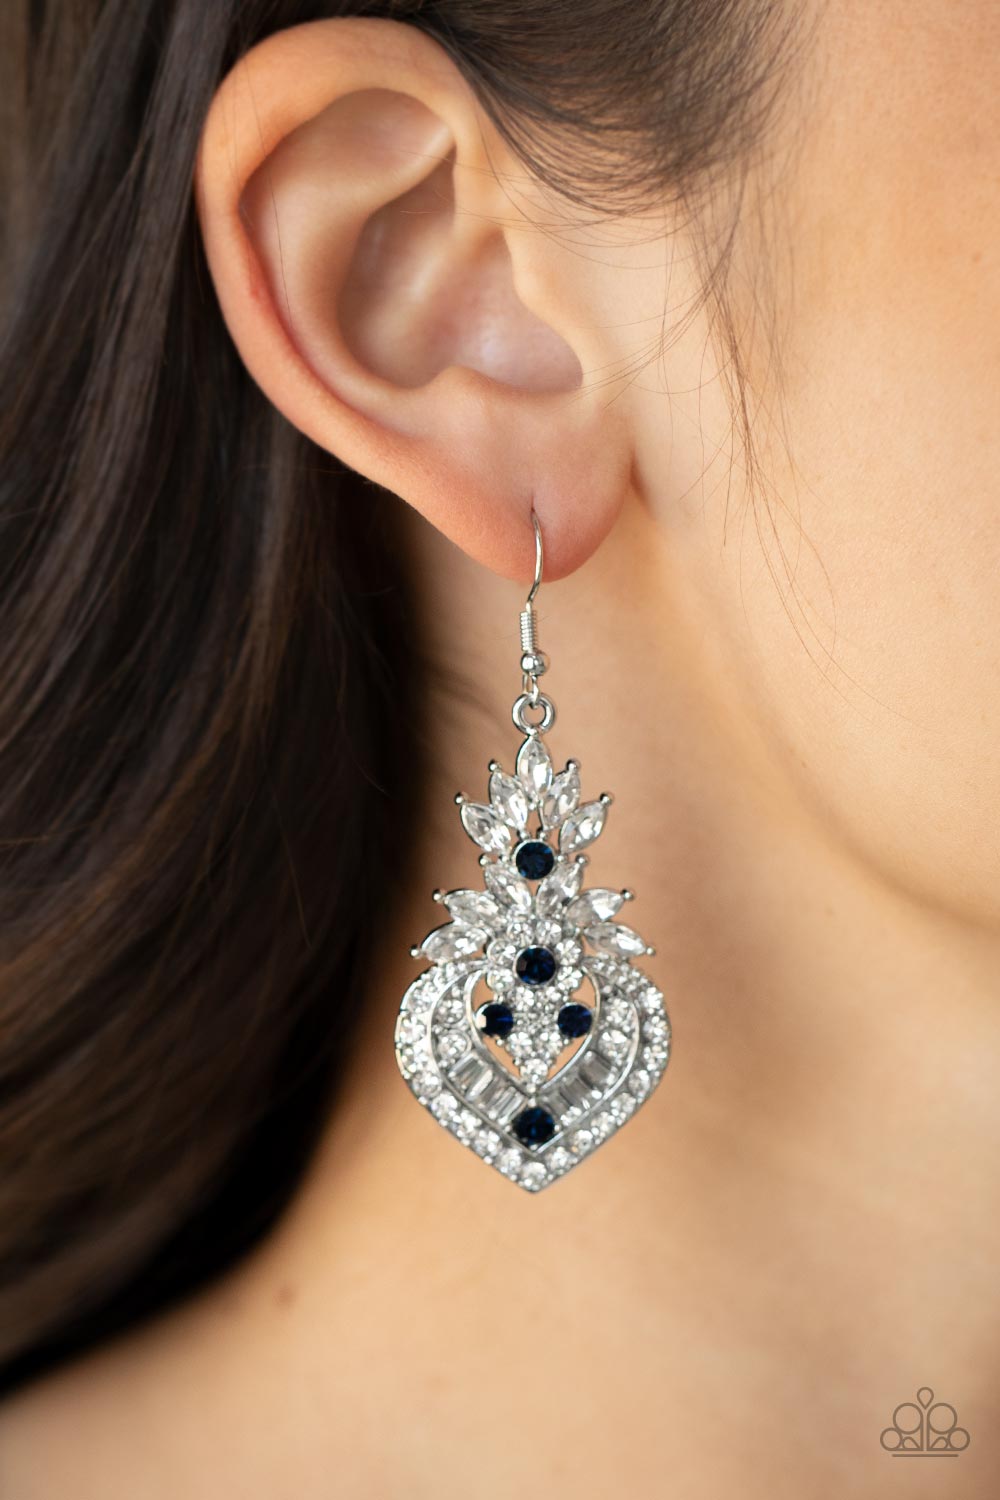 Paparazzi Royal Hustle - Blue - Earrings - $5 Jewelry with Ashley Swint